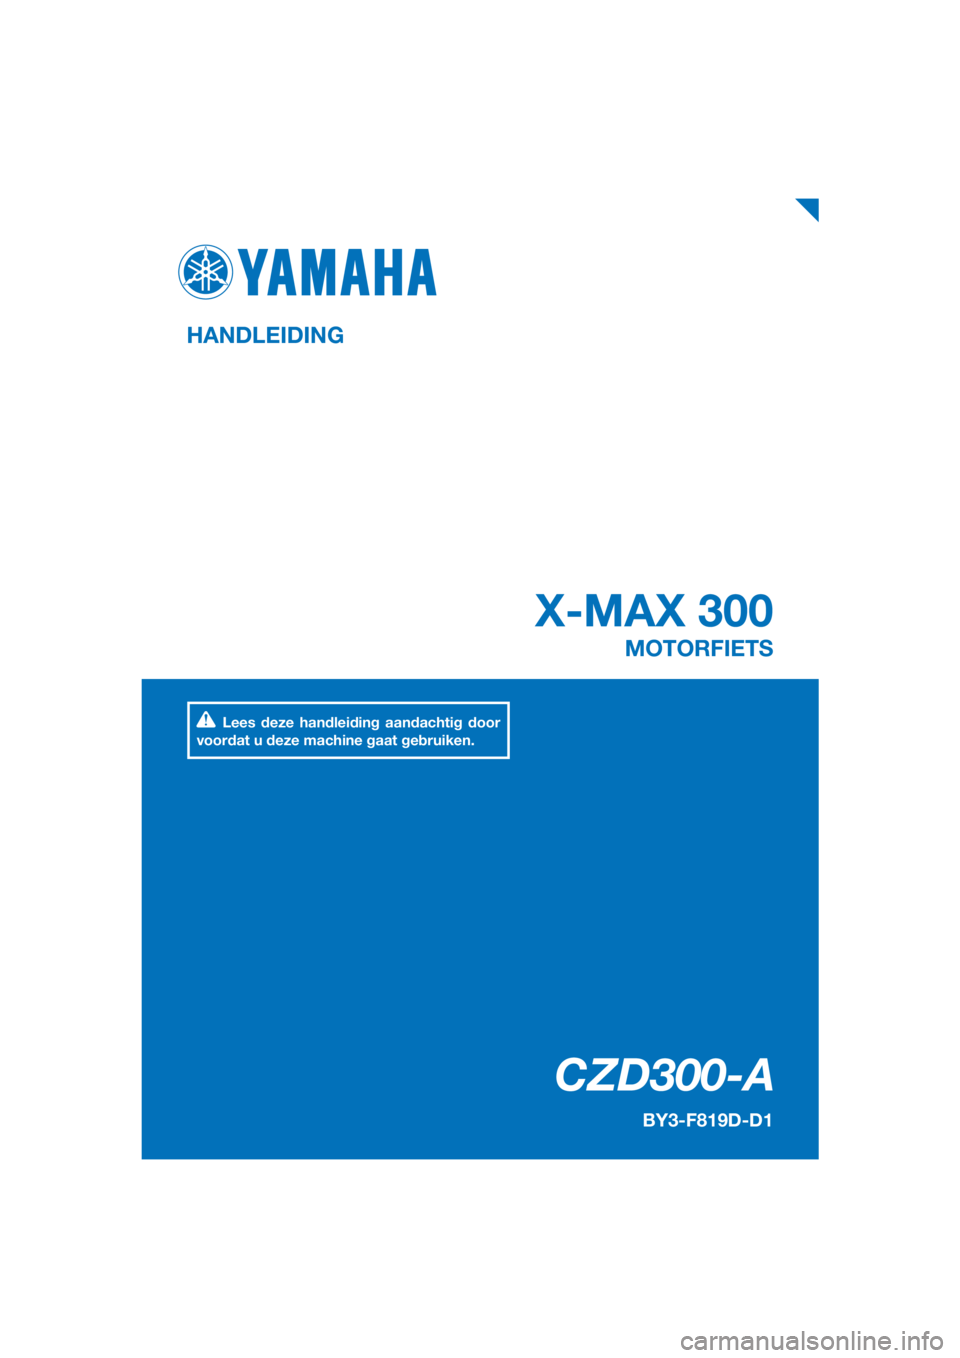 YAMAHA XMAX 300 2018  Instructieboekje (in Dutch) PANTONE285C
CZD300-A
X-MAX 300
HANDLEIDING
BY3-F819D-D1
MOTORFIETS
Lees deze handleiding aandachtig door 
voordat u deze machine gaat gebruiken.
[Dutch  (D)] 